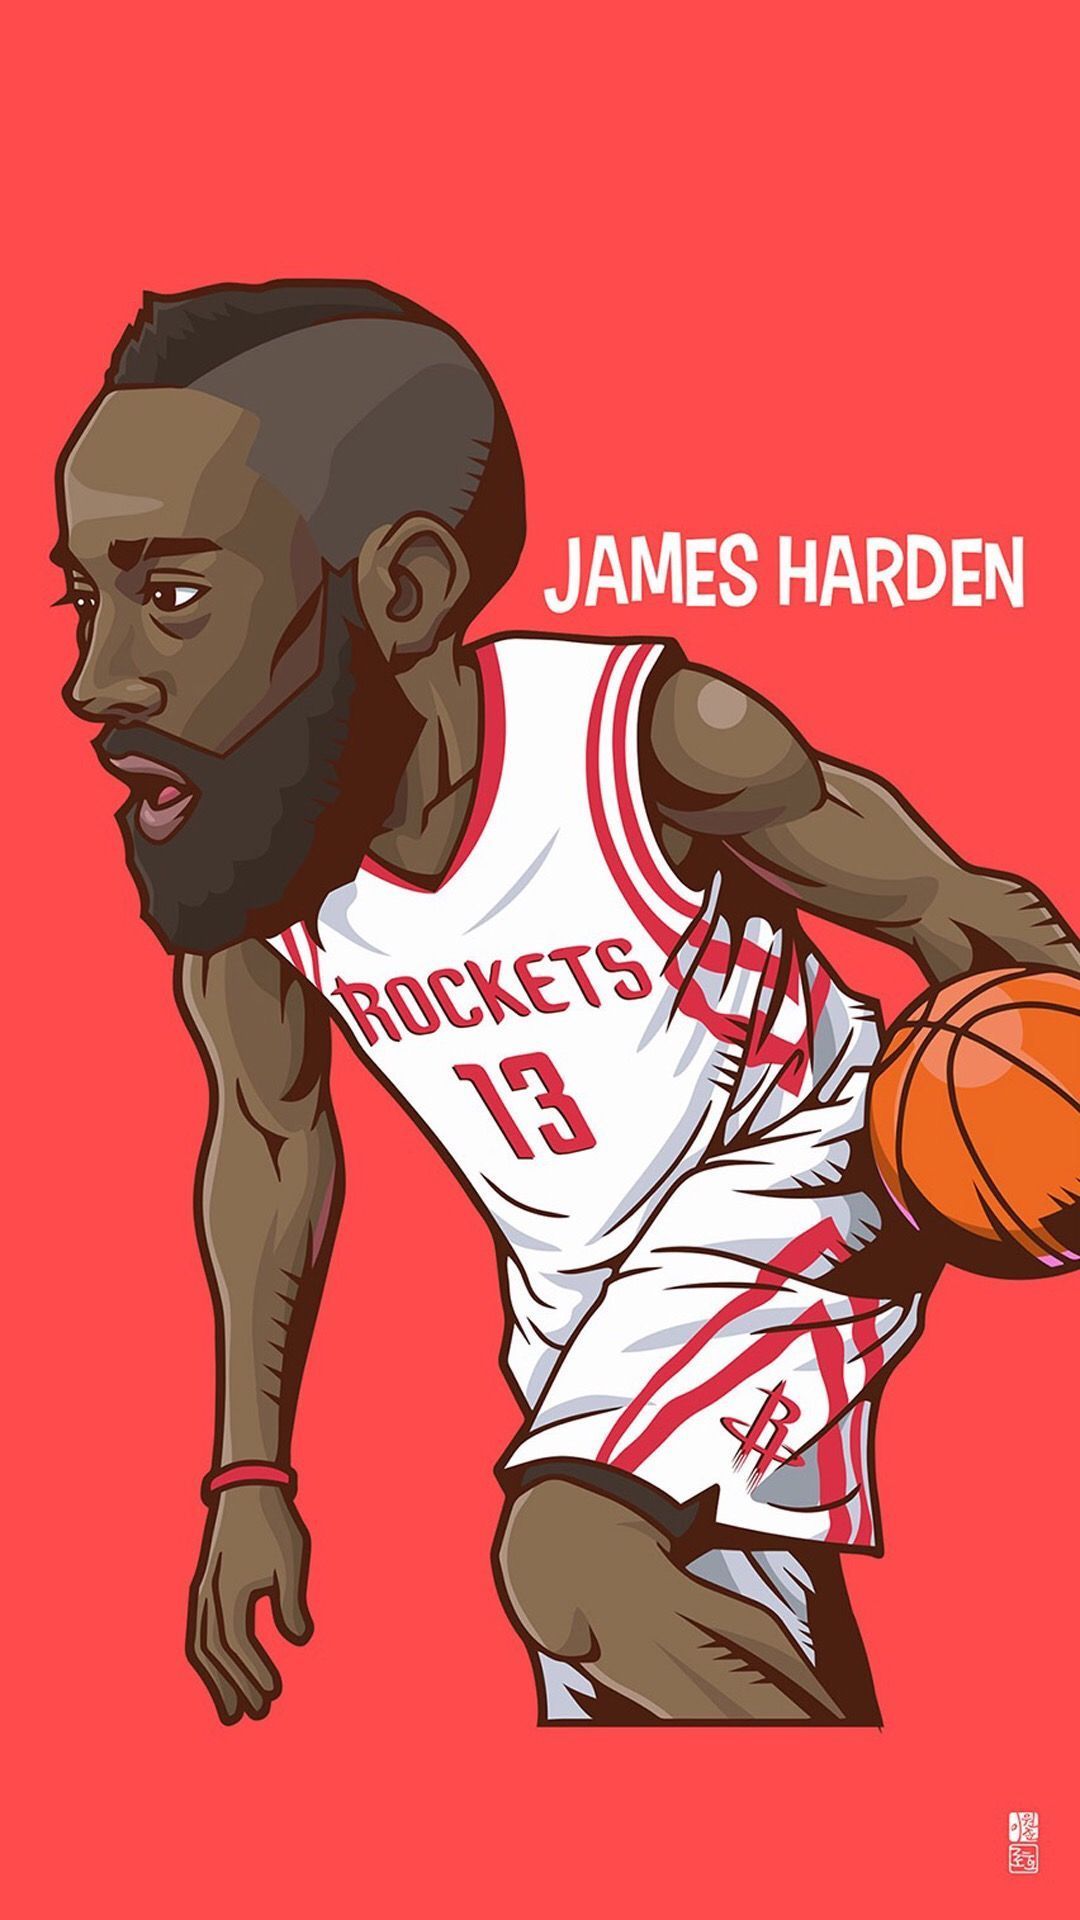 James Harden. Tap to see Collection of Famous NBA Basketball Players Cute Cartoon Wallpaper for iPho. Dibujos de basquetbol, Jugadores de baloncesto, Basquetball